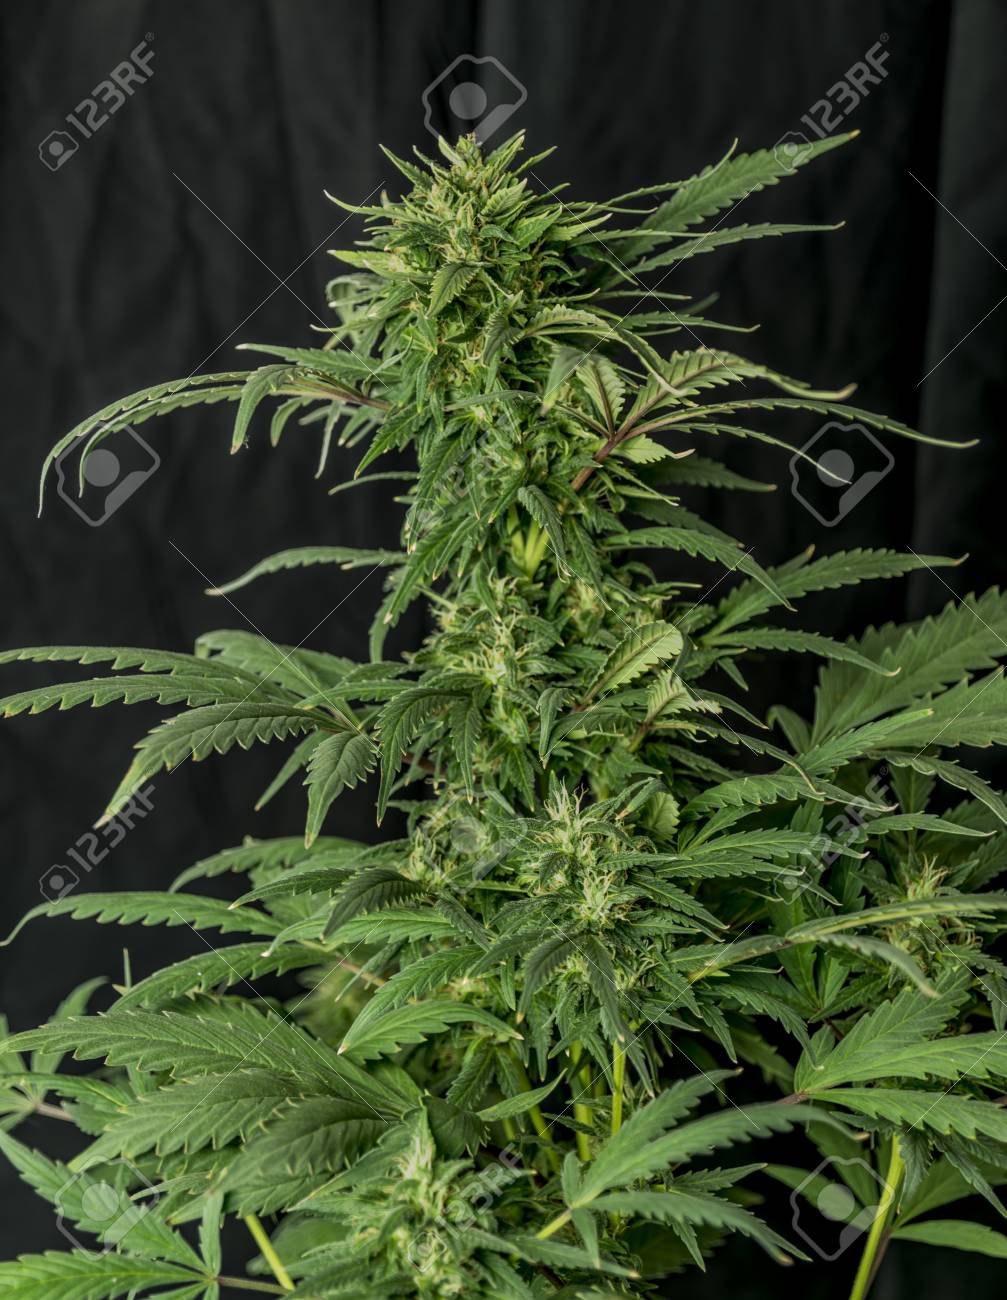 Green Marijuana Flower Bubba Kush Variety And Black Background